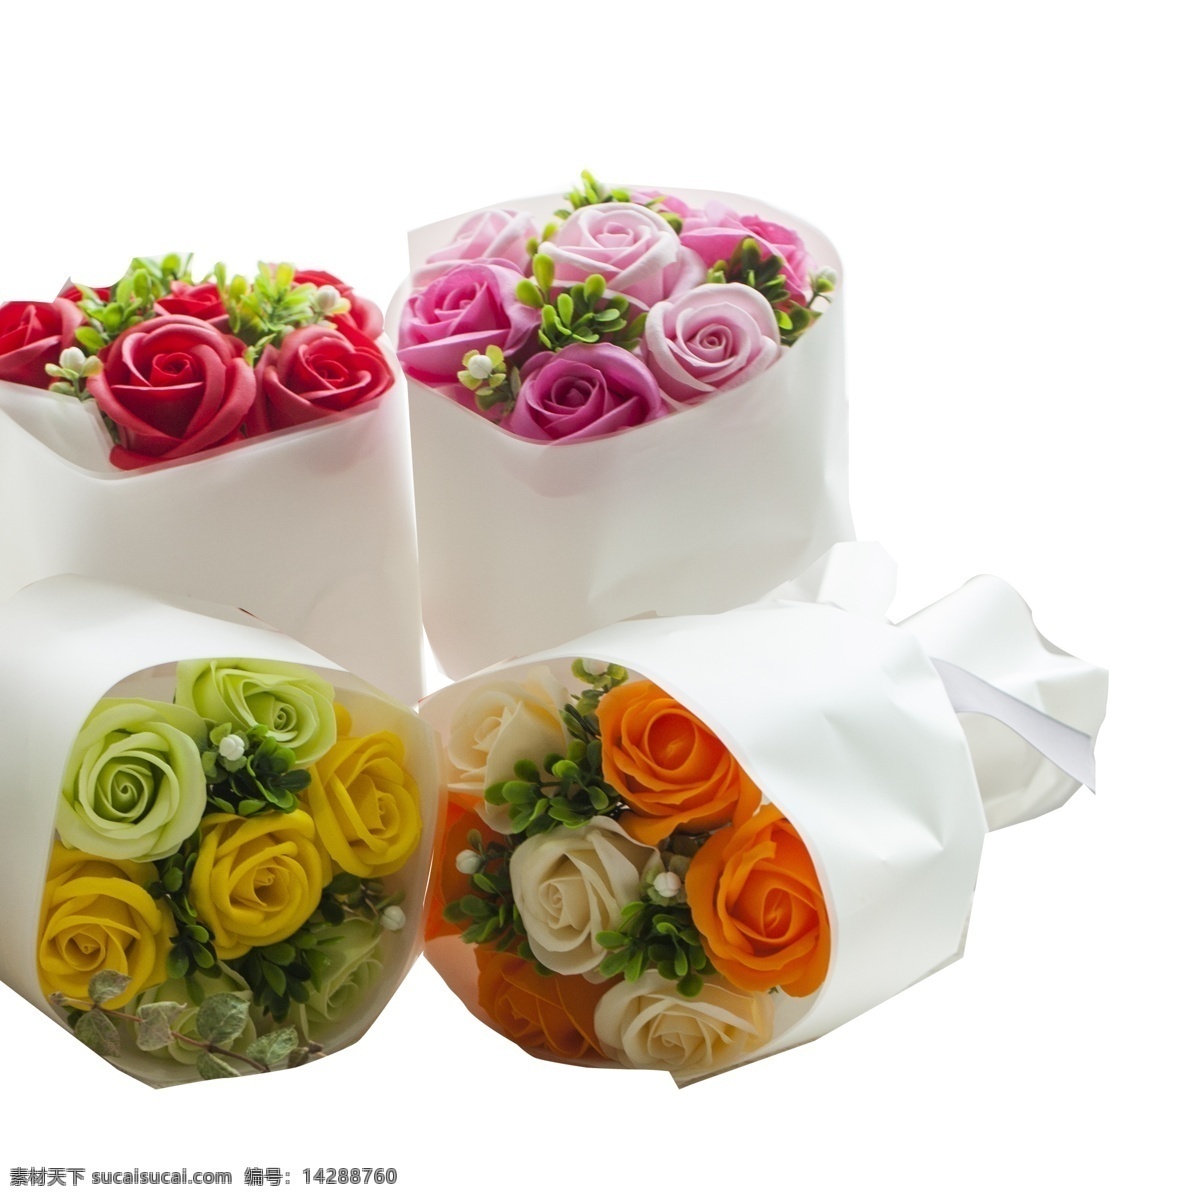 四 朵 新鲜 花朵 免 抠 图 时尚鲜花 玫瑰花朵 绿叶子 时尚礼盒 漂亮的花朵 情人节 礼物 时尚花艺 红色的花朵